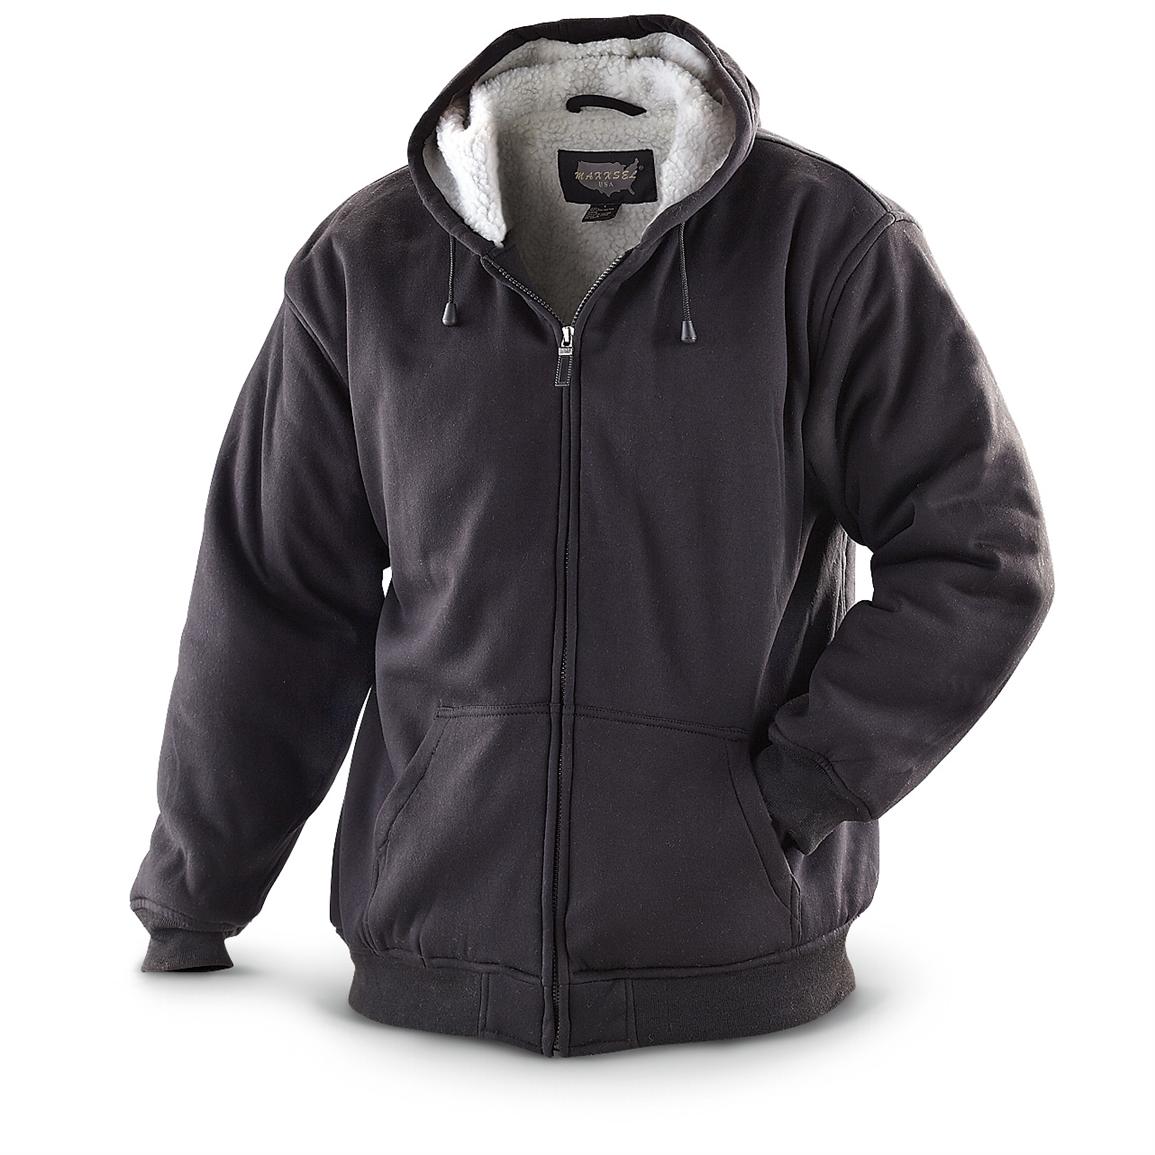 Maxsell® Hooded Fleece Jacket - 207553, Sweatshirts & Hoodies at ...